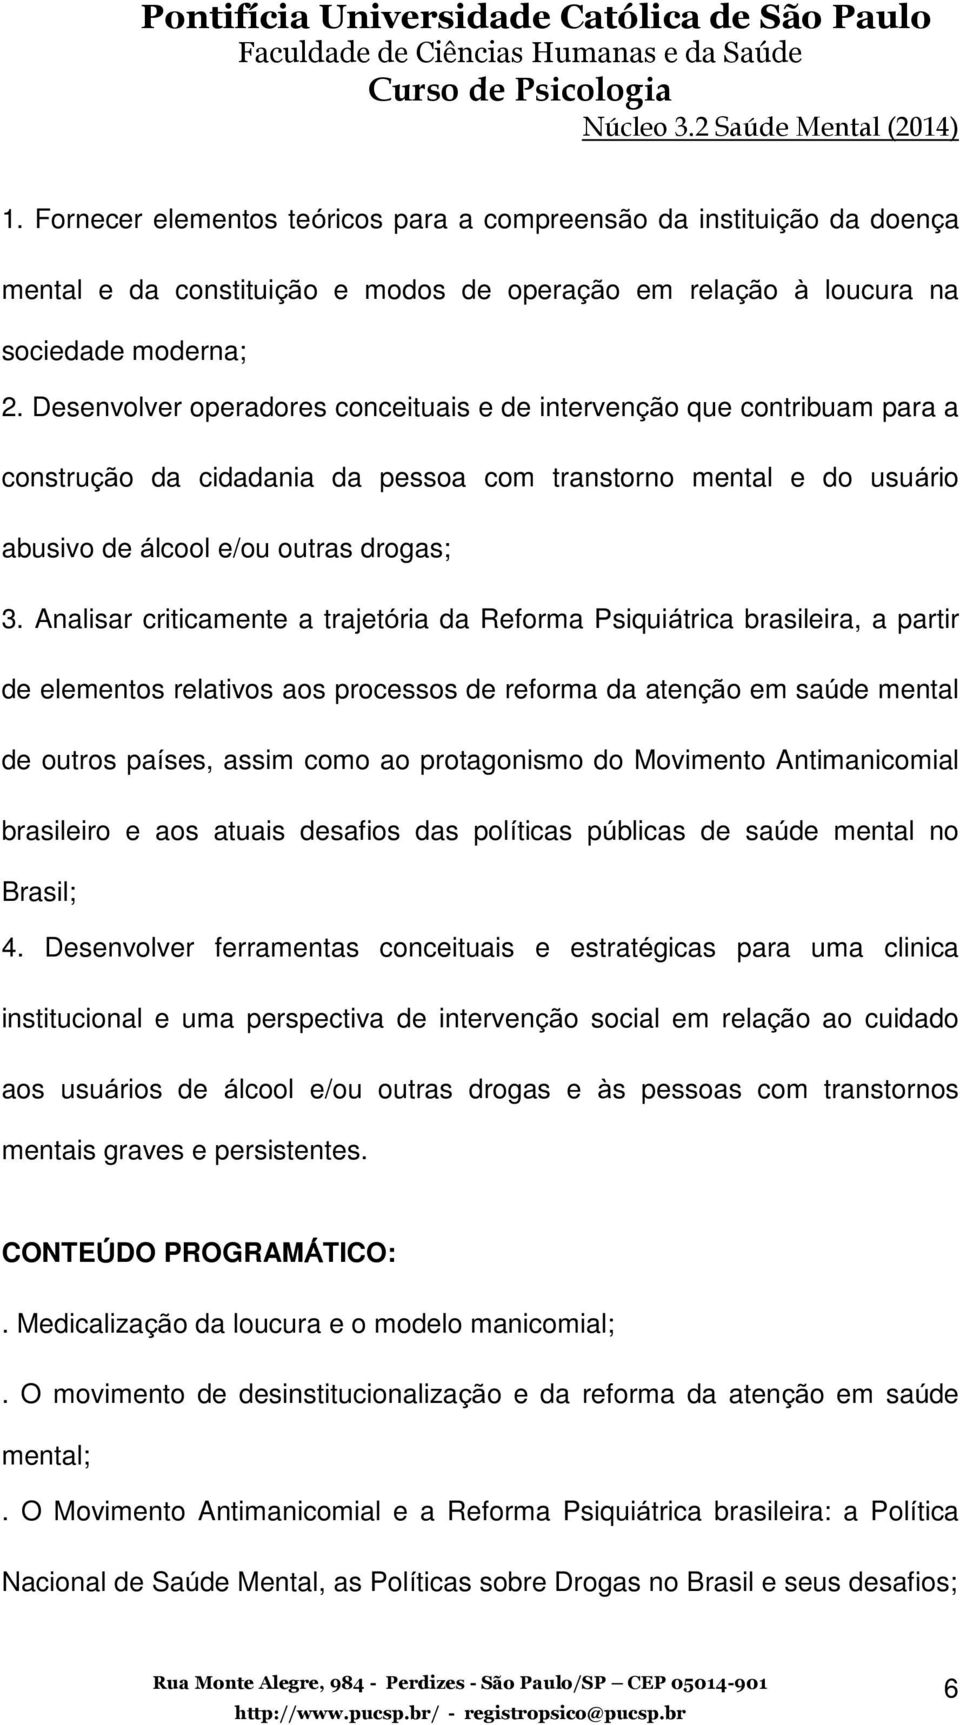 Analisar criticamente a trajetória da Reforma Psiquiátrica brasileira, a partir de elementos relativos aos processos de reforma da atenção em saúde mental de outros países, assim como ao protagonismo